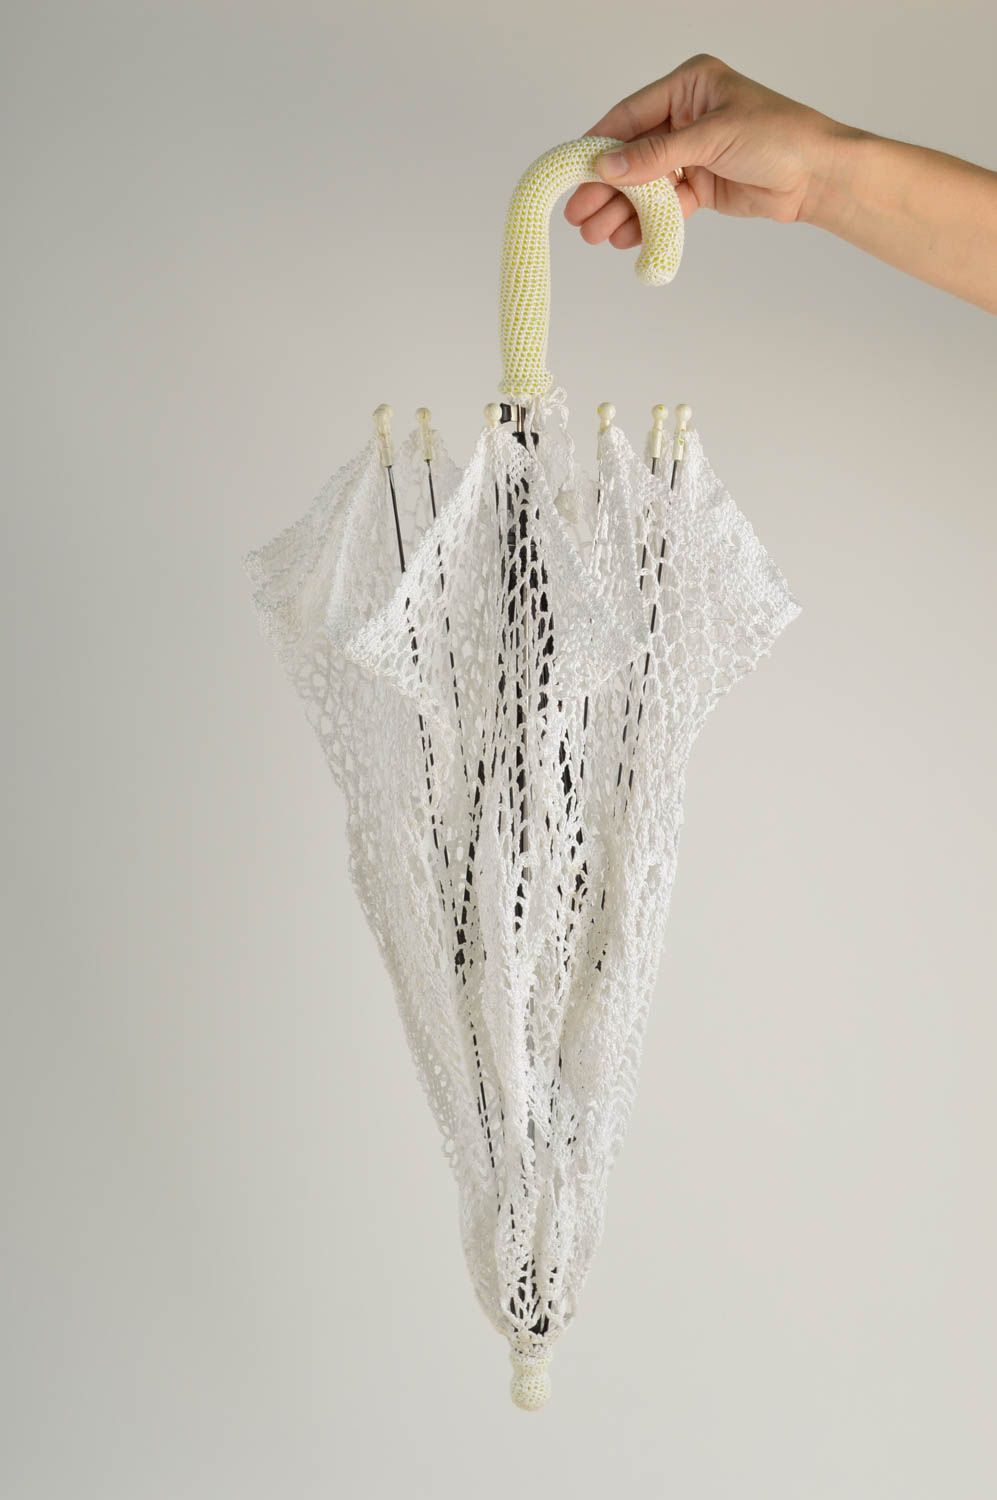 Подарок ручной работы красивый зонтик белый женский зонт из хлопковых ниток фото 2